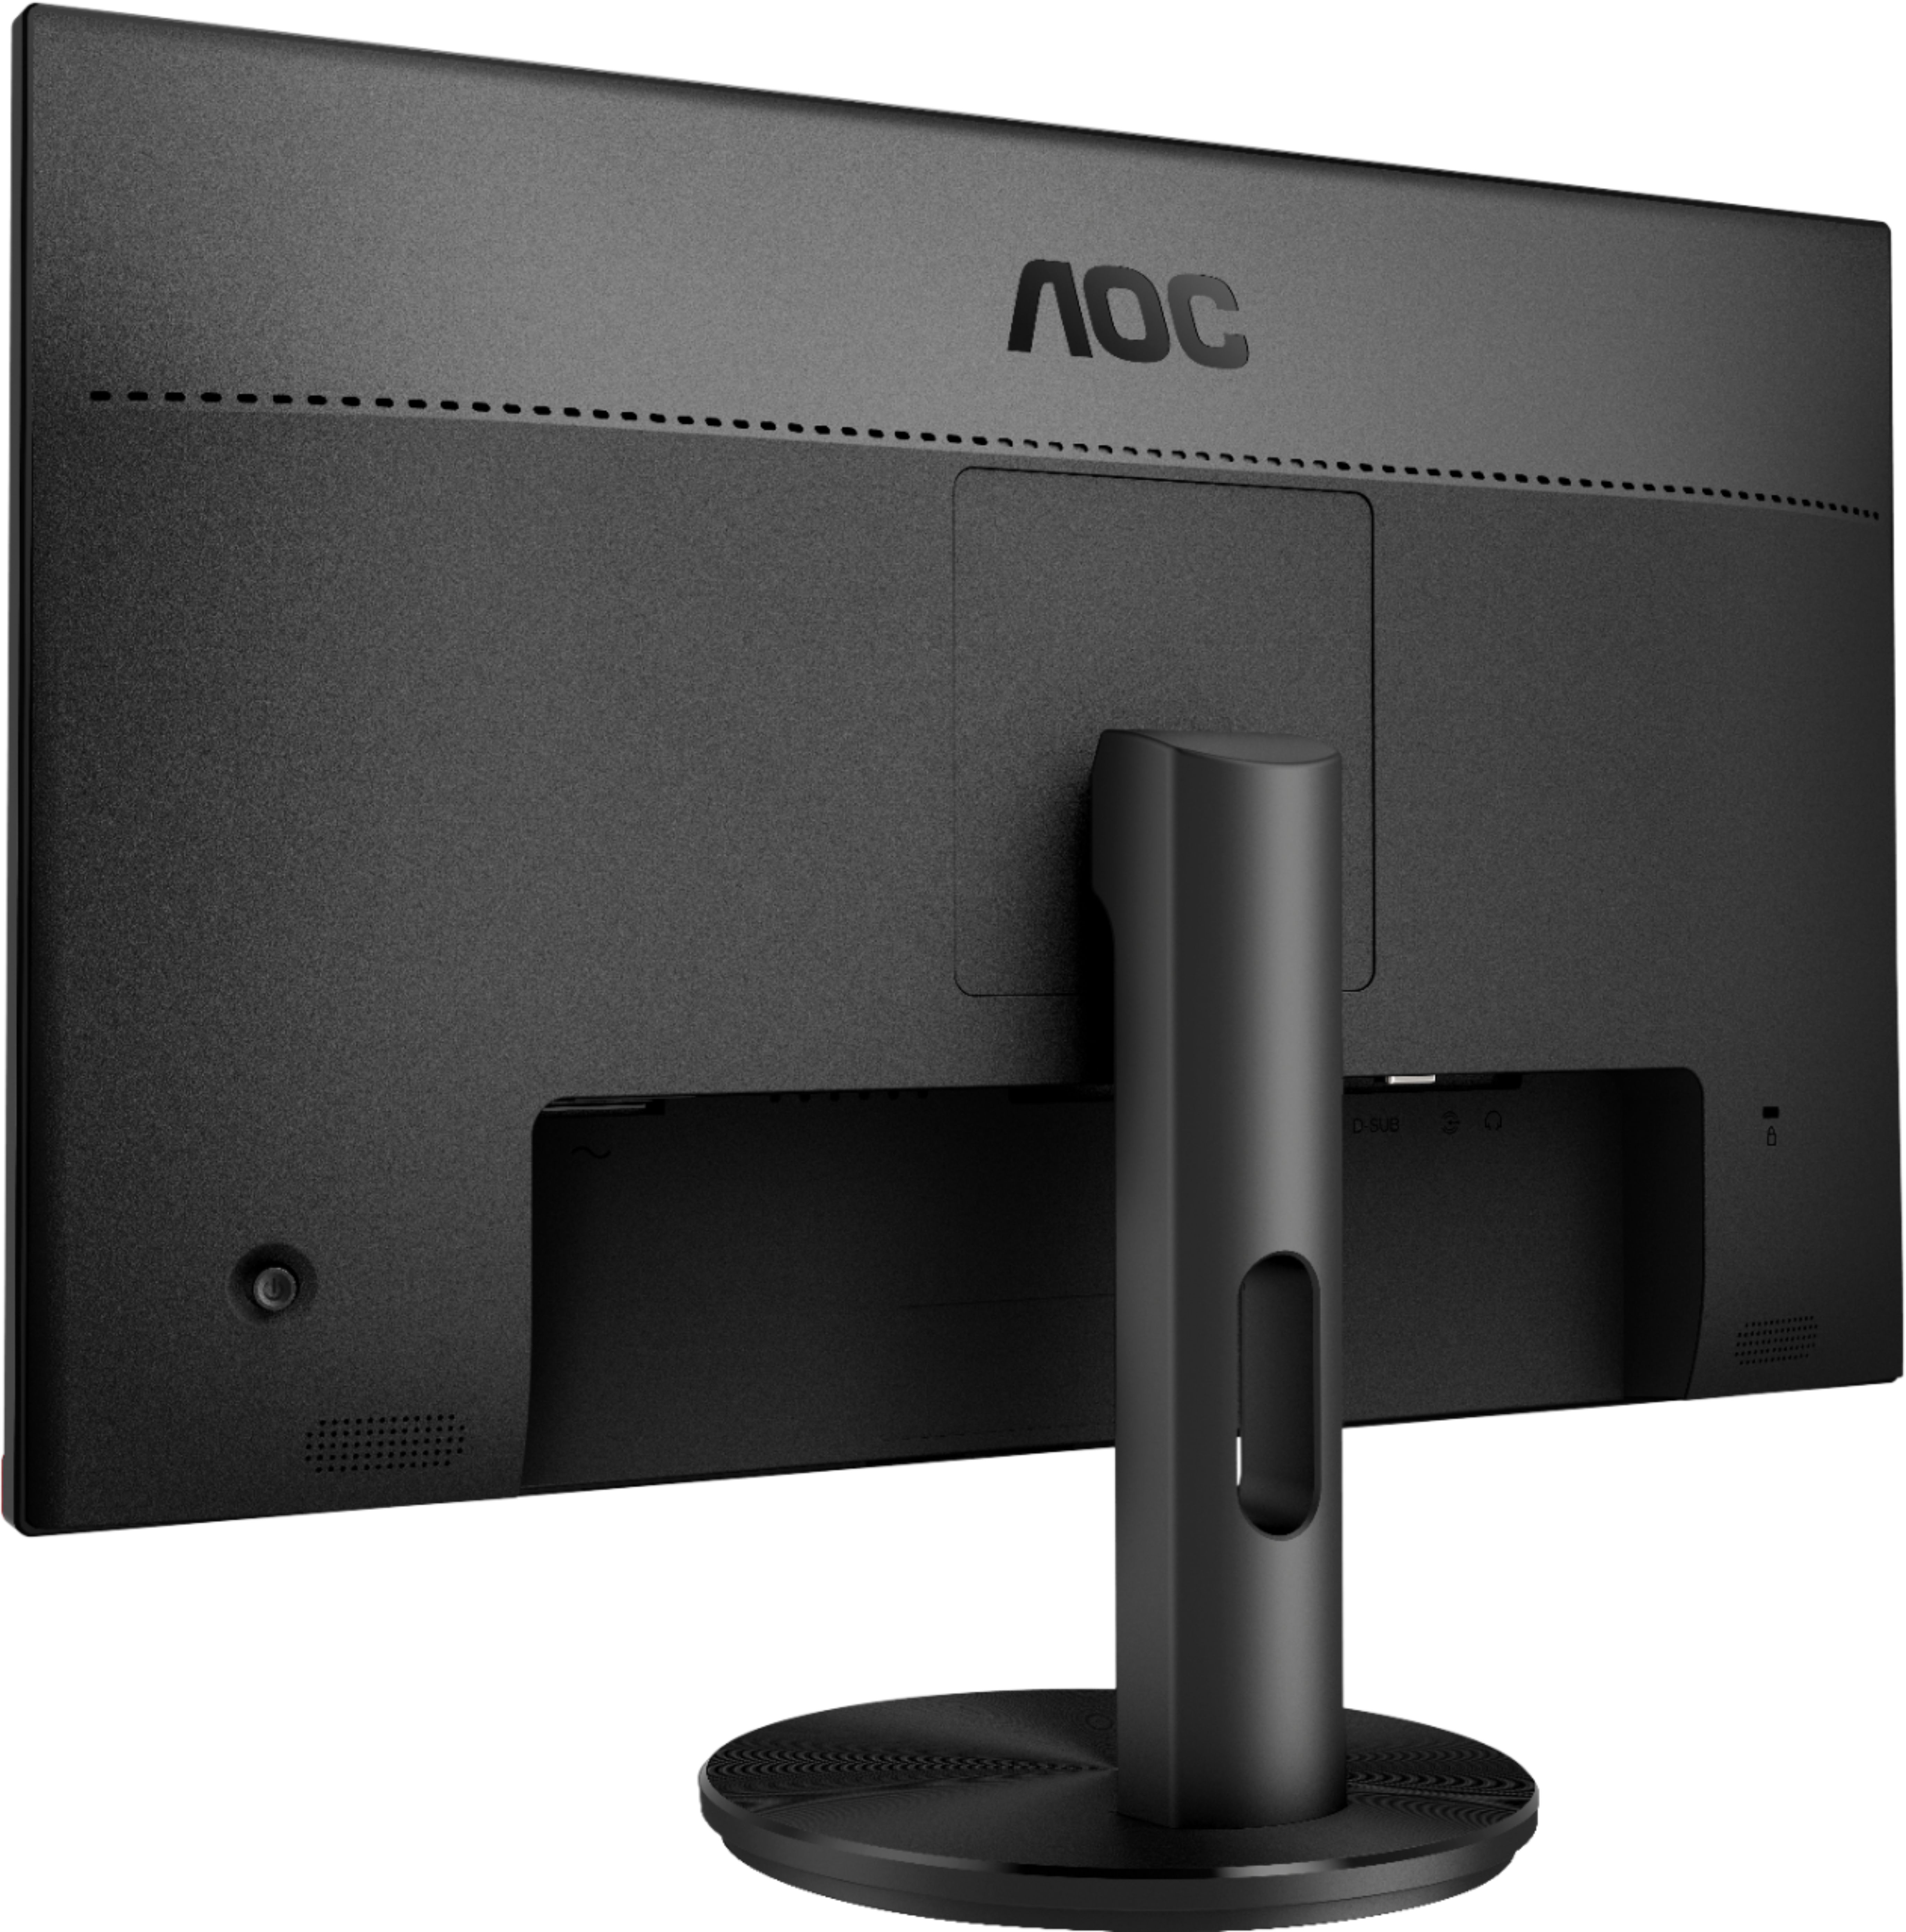 Aoc G2590fx 24 5 Led Fhd Freesync Monitor Displayport Hdmi Vga Black G2590fx Best Buy